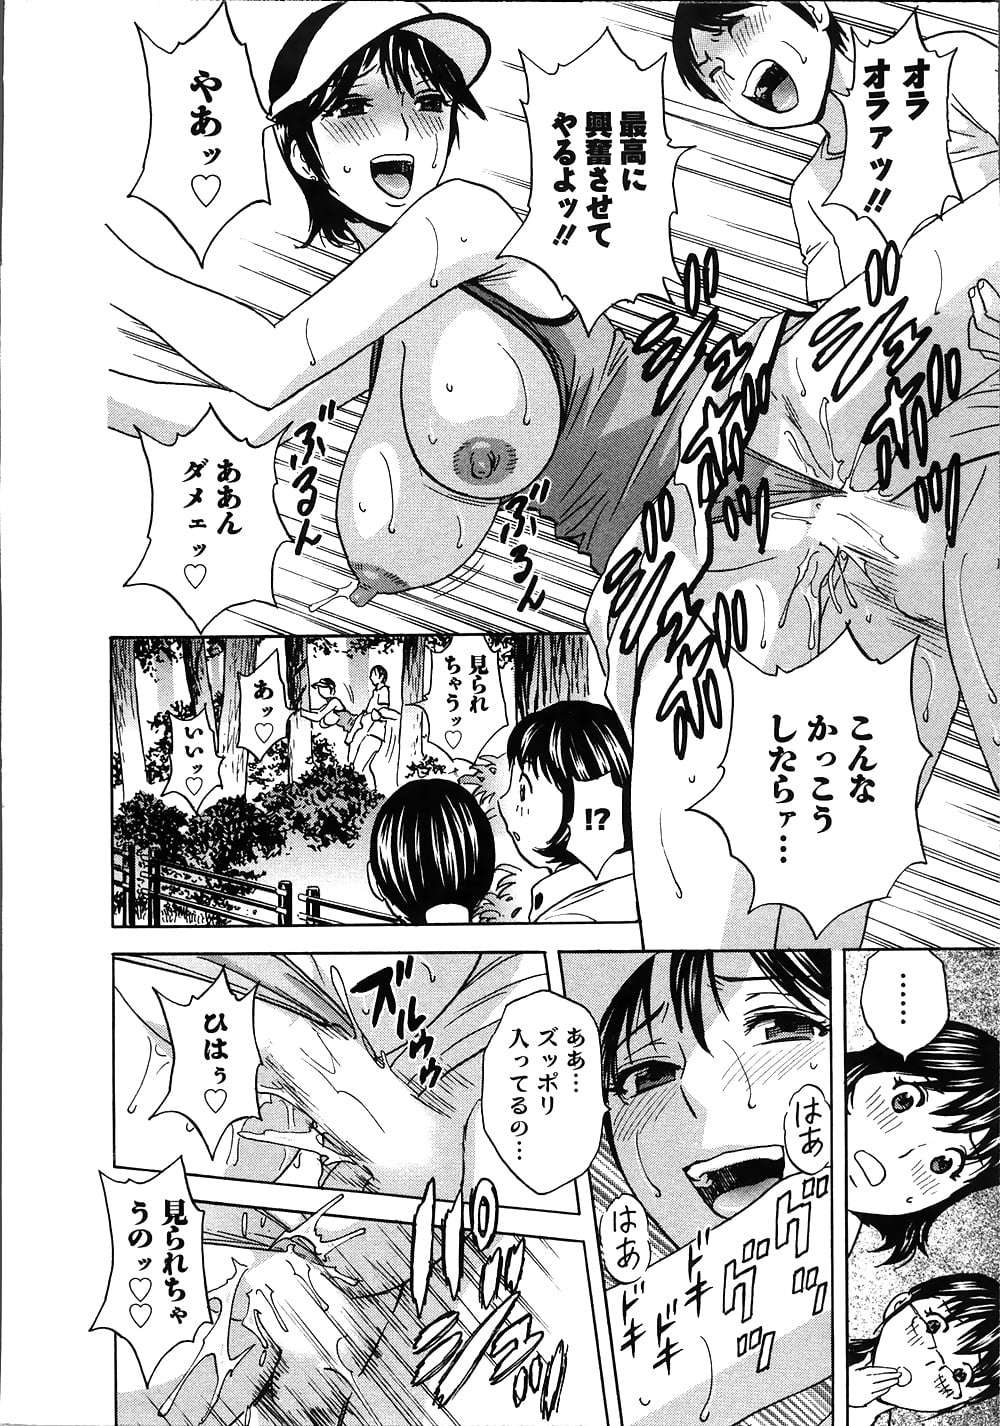 manga 15